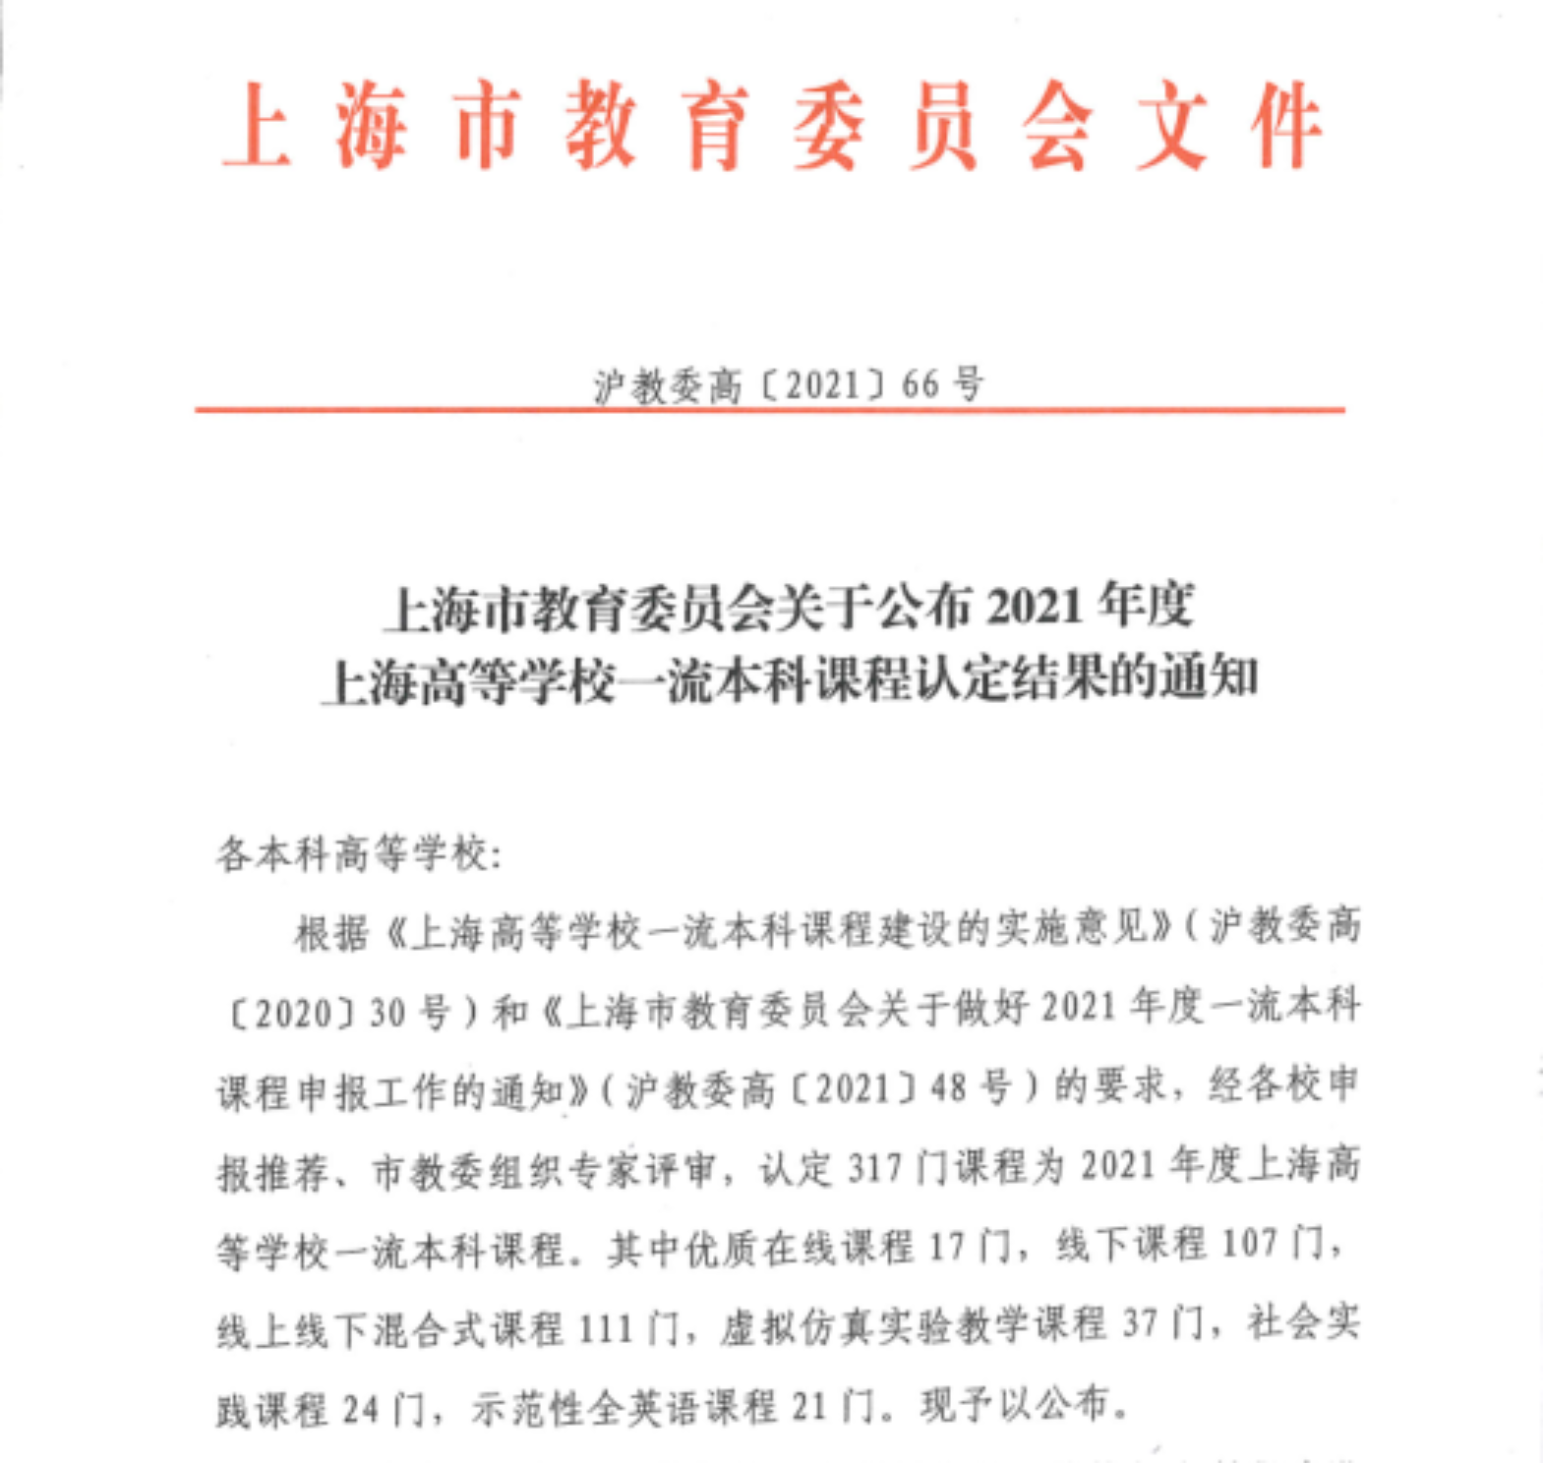 图1. 《上海市教育委员会关于公布 2021 年度上海高等学校一流本科课程认定结果的通知》（沪教委高〔2021〕66 号）